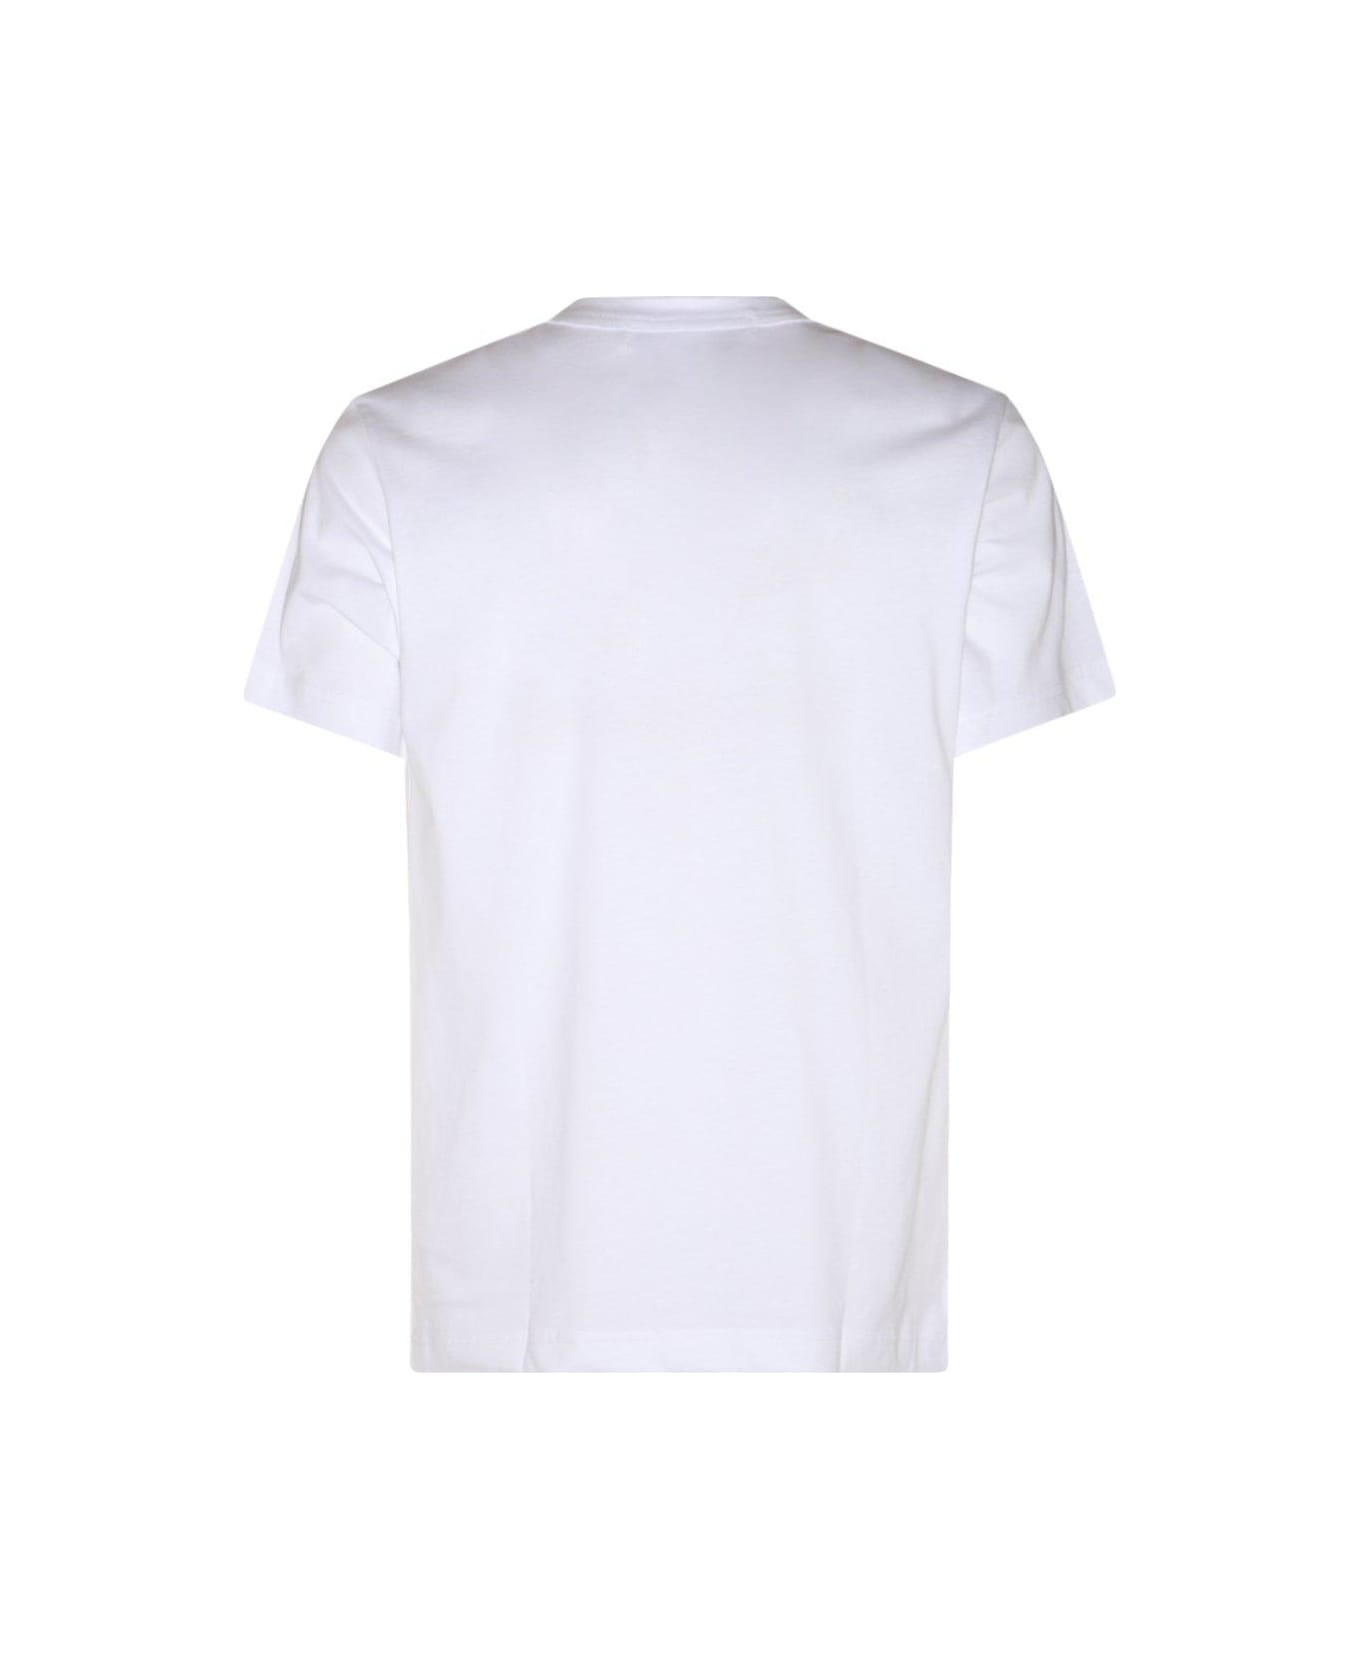 Comme des Garçons Graphic Printed Crewneck T-shirt - White